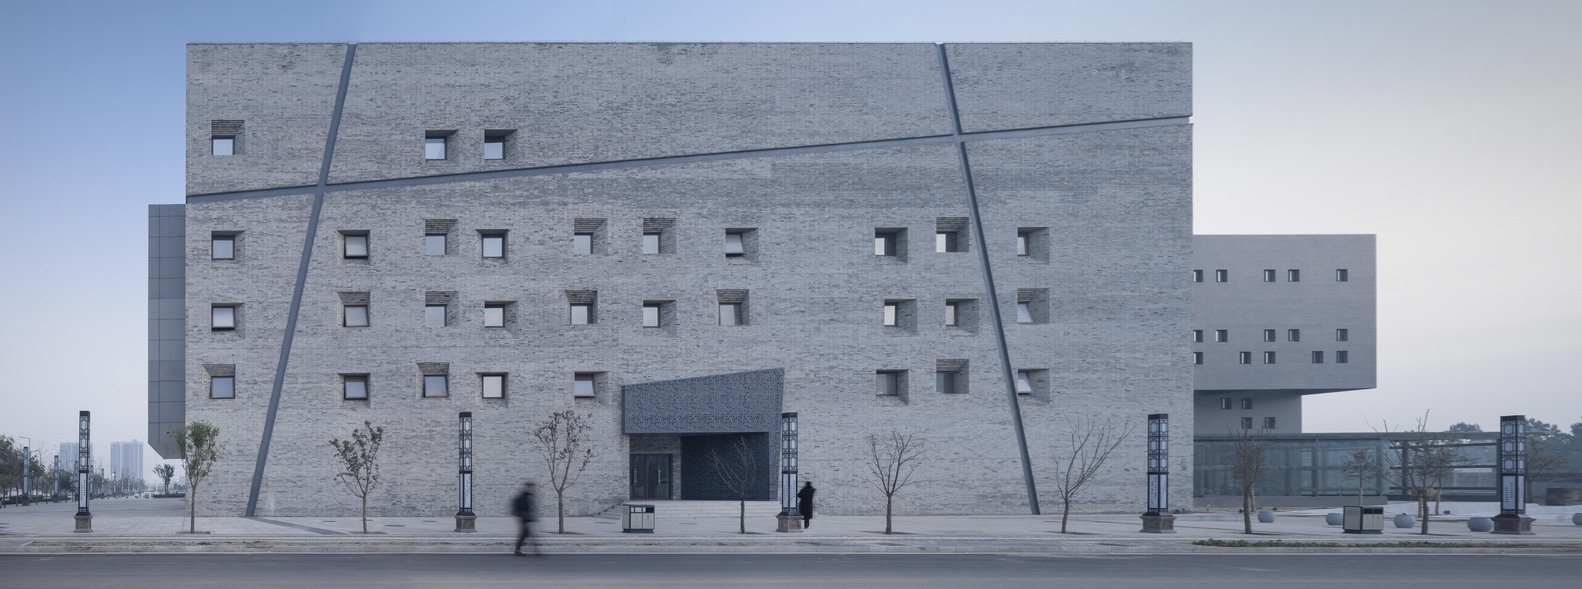 渭南市文化艺术中心丨清华大学建筑设计研究院